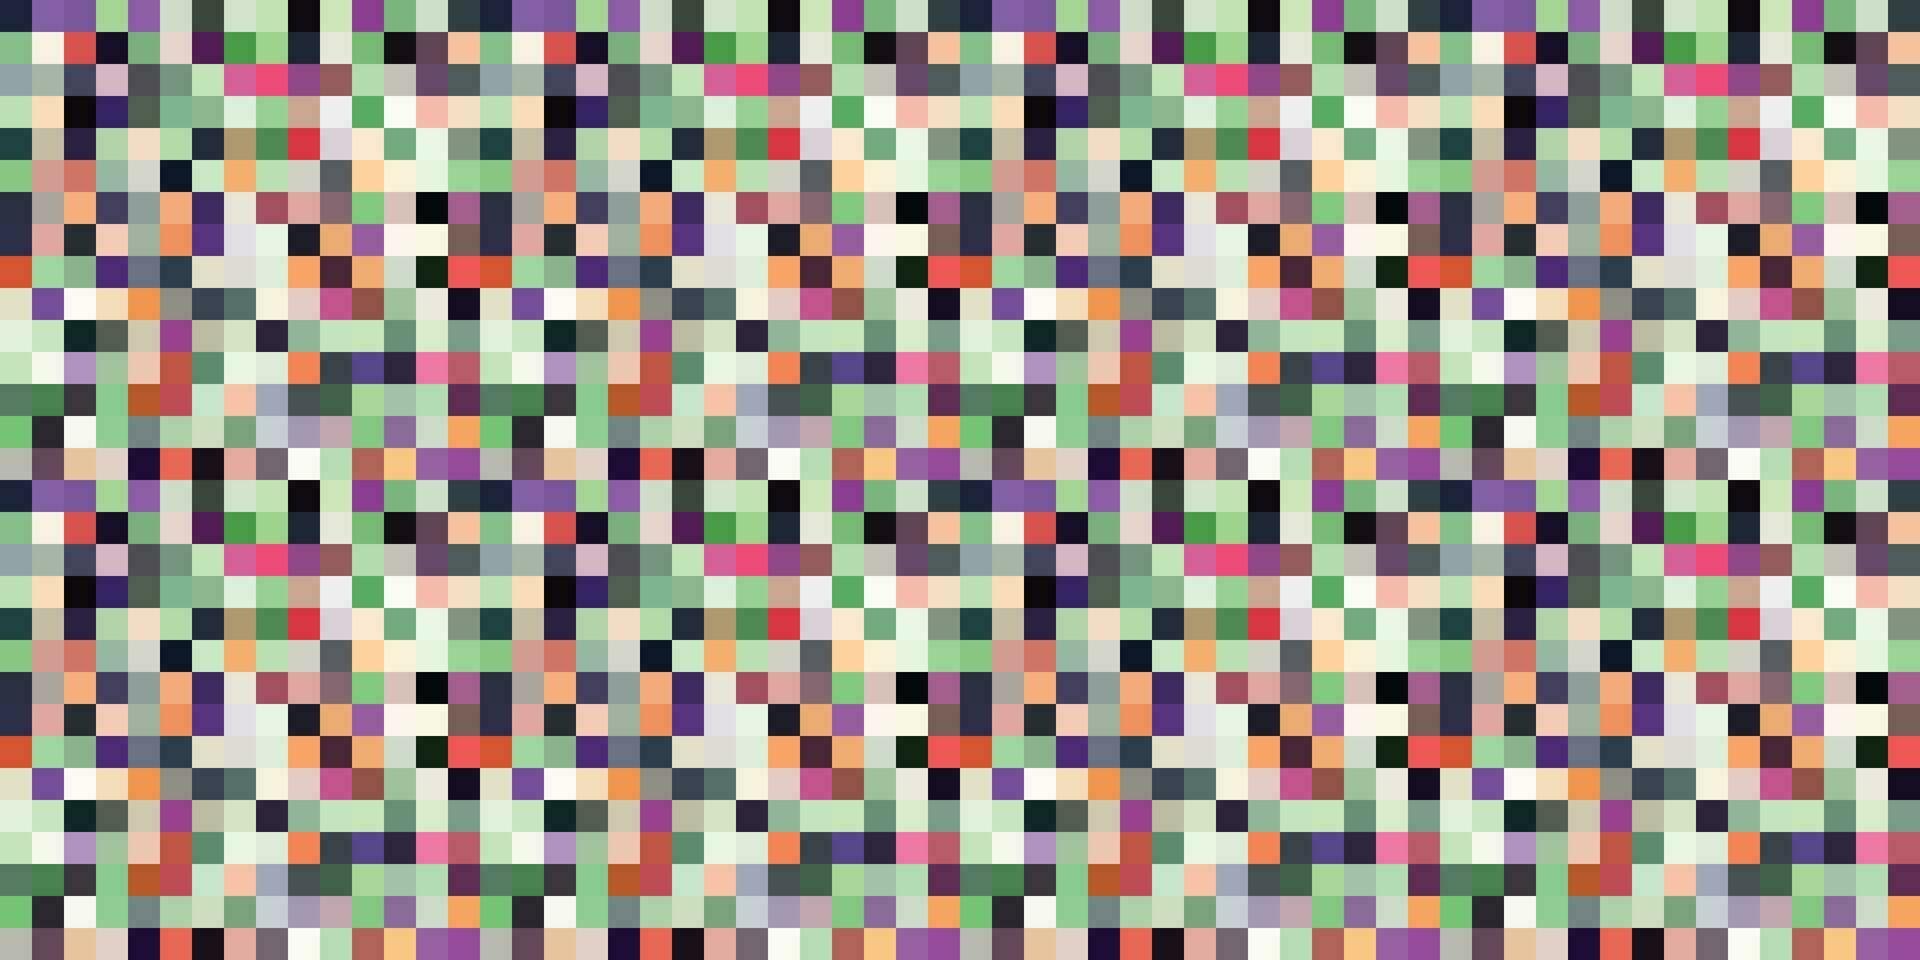 korrelig kleurrijk levendig meetkundig rooster modern abstract pixel lawaai vector textuur, tegel naadloos patroon achtergrond